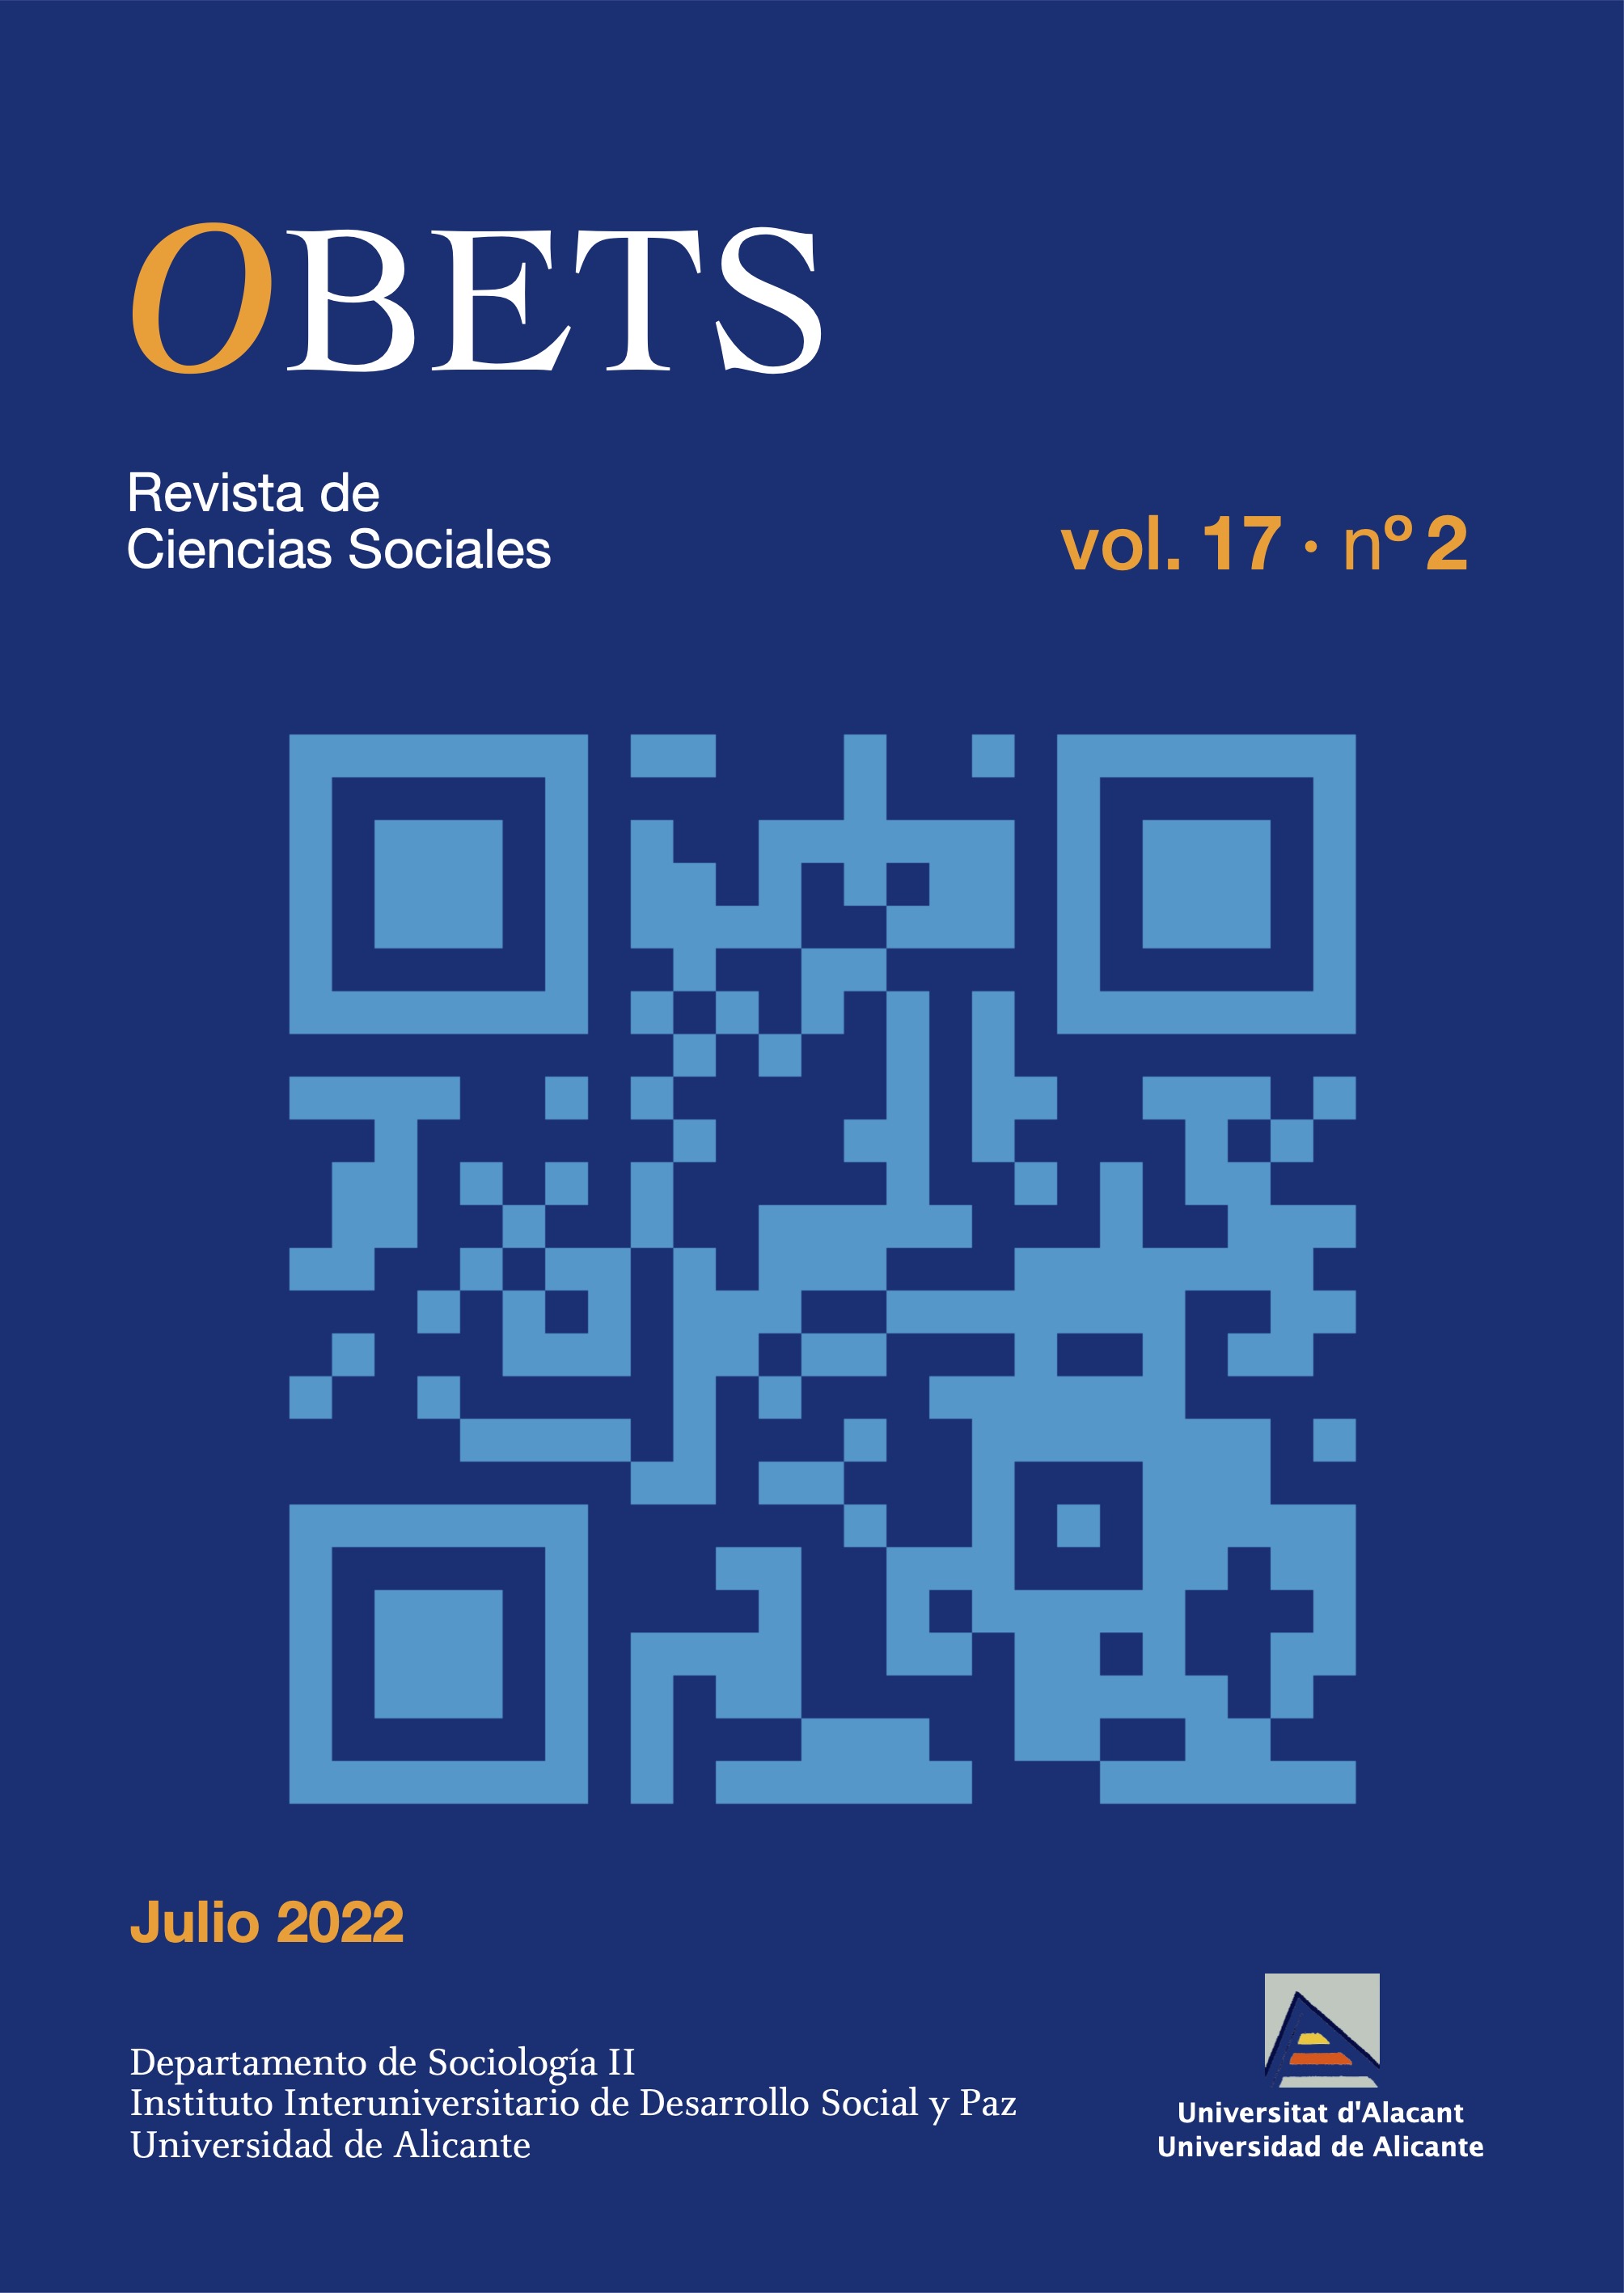 Revista Obets Vol. 17 n. 2  julio 2022